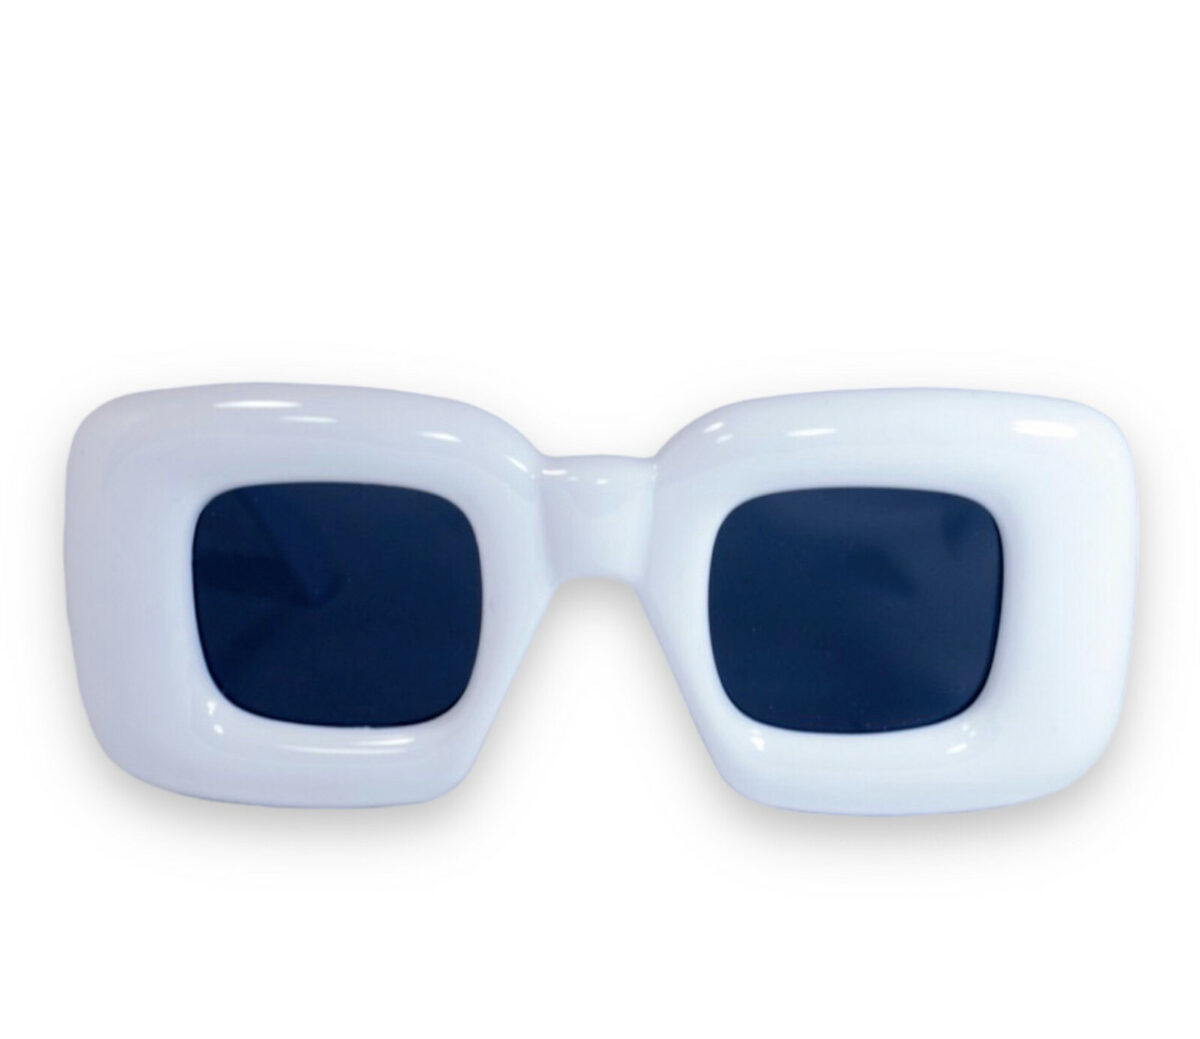 Оригінальні сонцезахисні жіночі окуляри білі 1330-6 topseason Cardeo